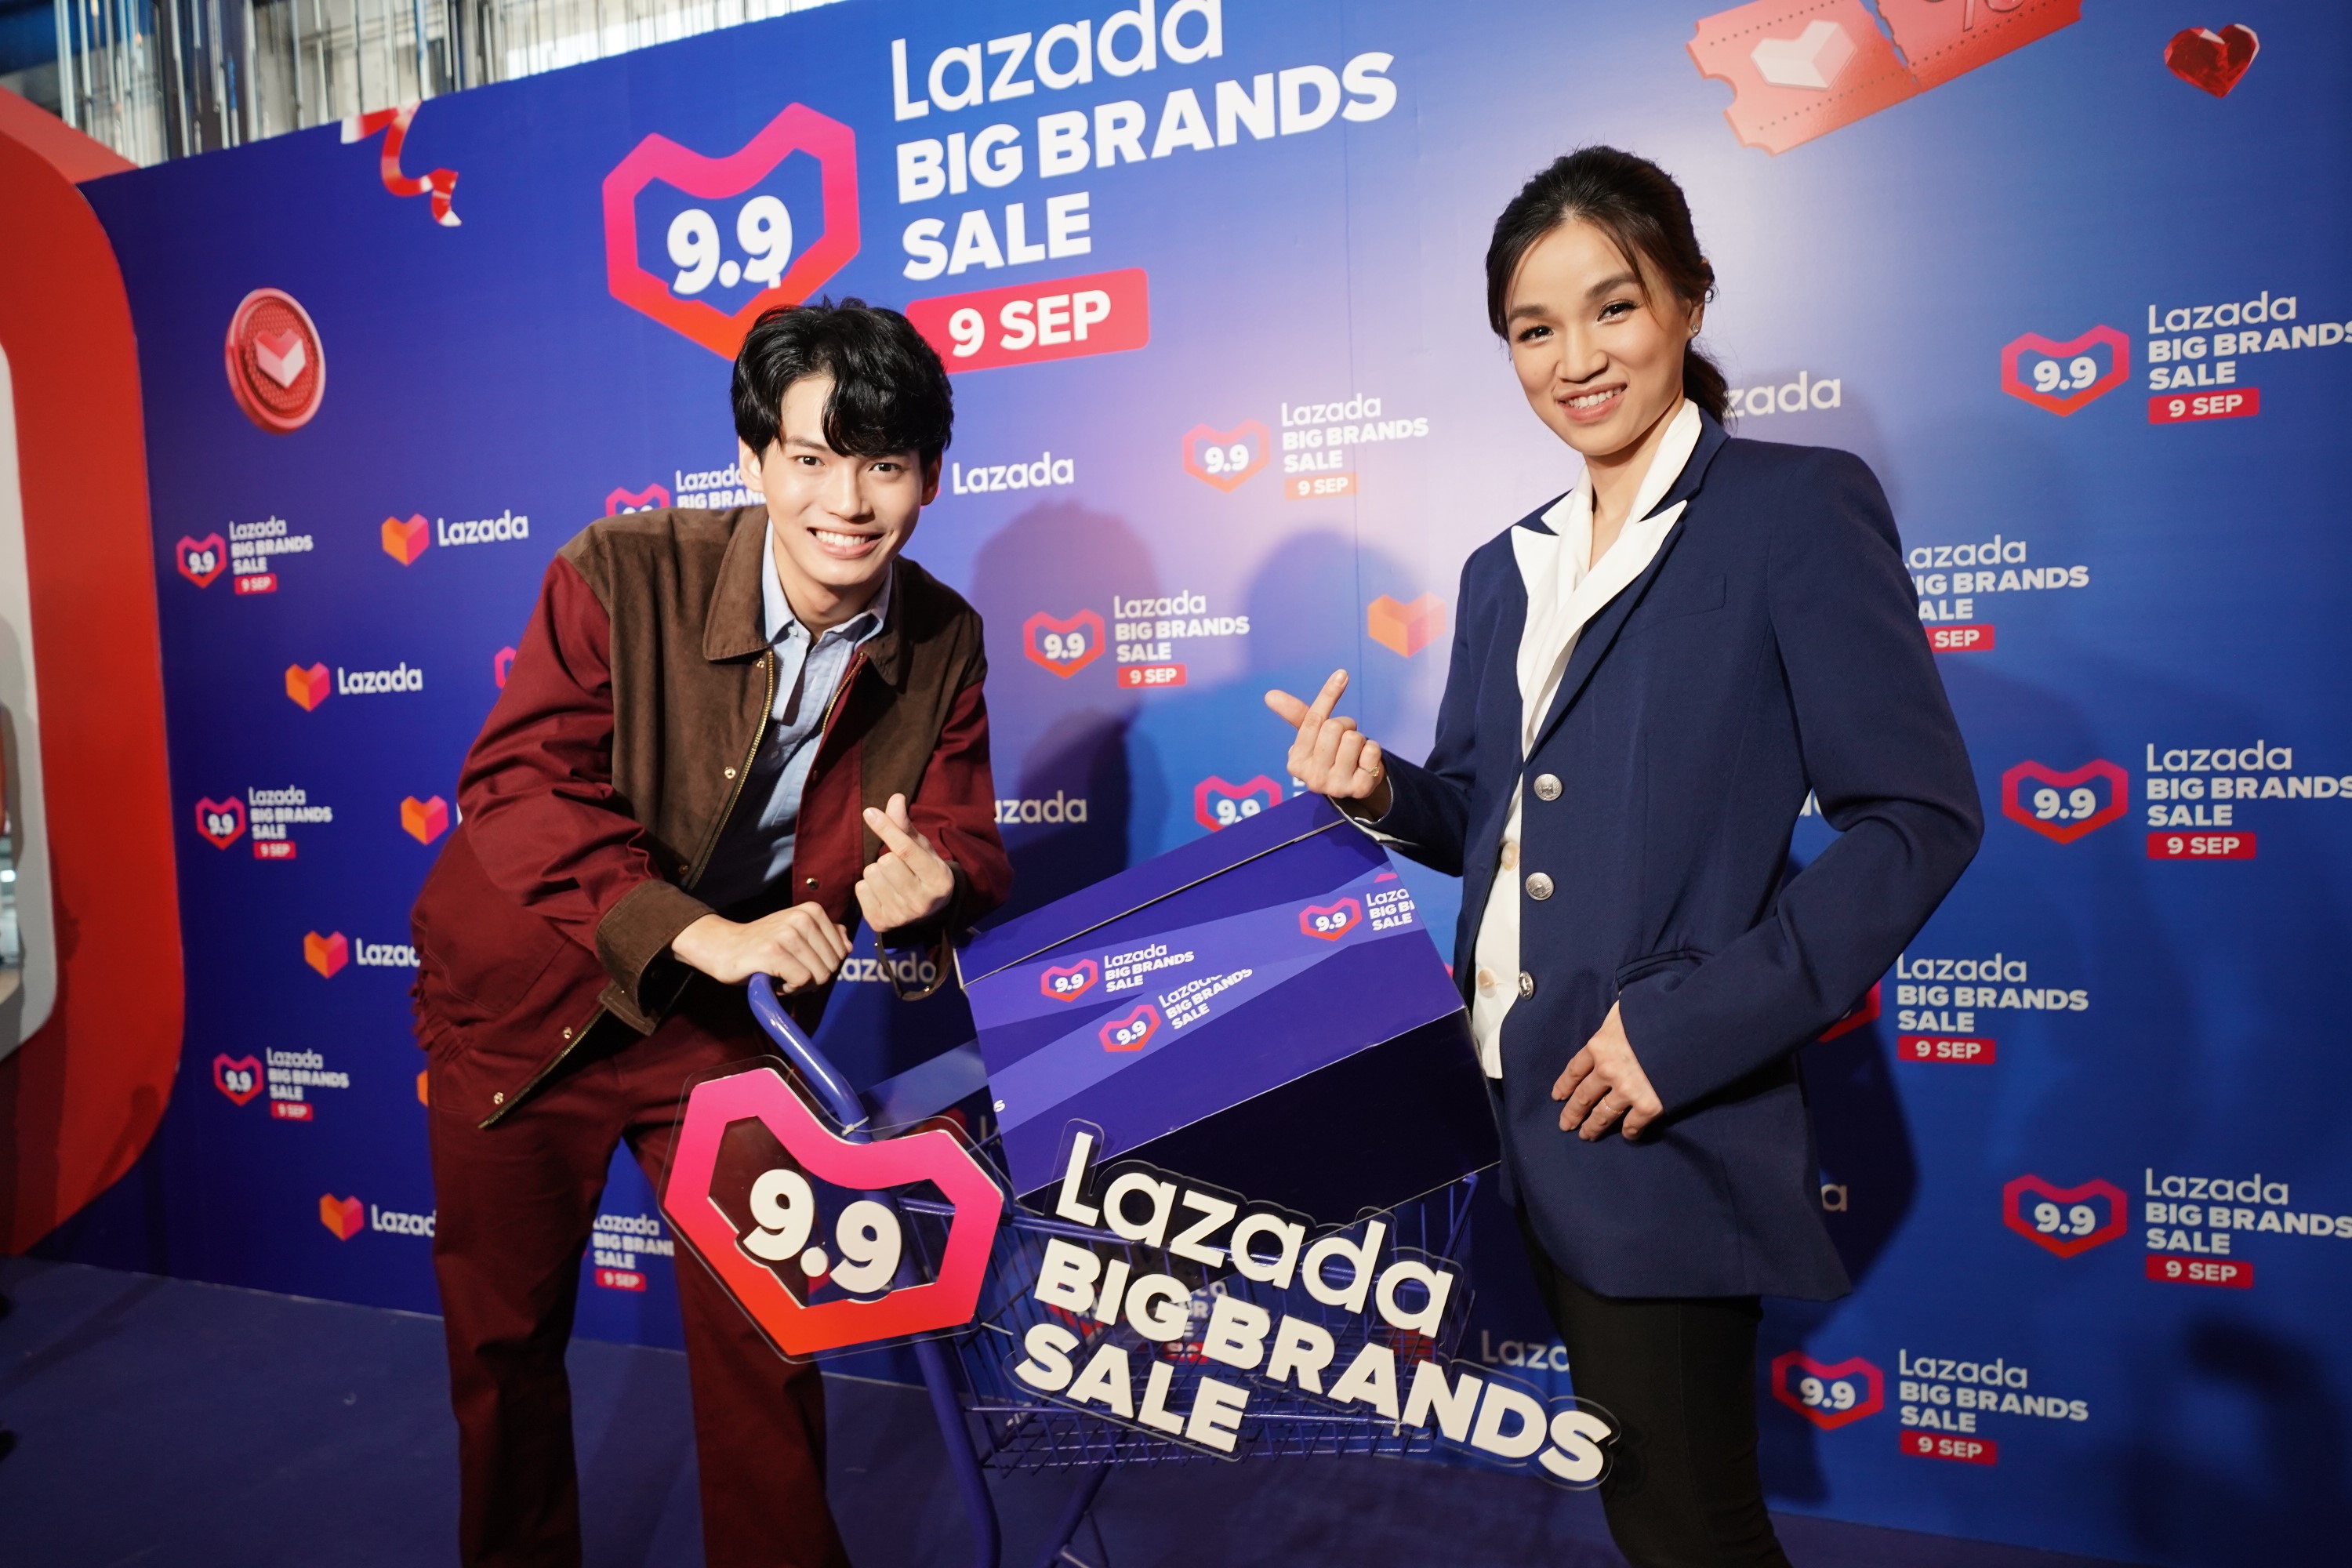 ลาซาด้า จัดมหกรรมช้อปครั้งใหญ่แห่งปี 'Lazada 9.9 Big Brands Sale ยกระดับประสบการณ์ช้อปออนไลน์ ด้วยโฉมใหม่ของ LazMall